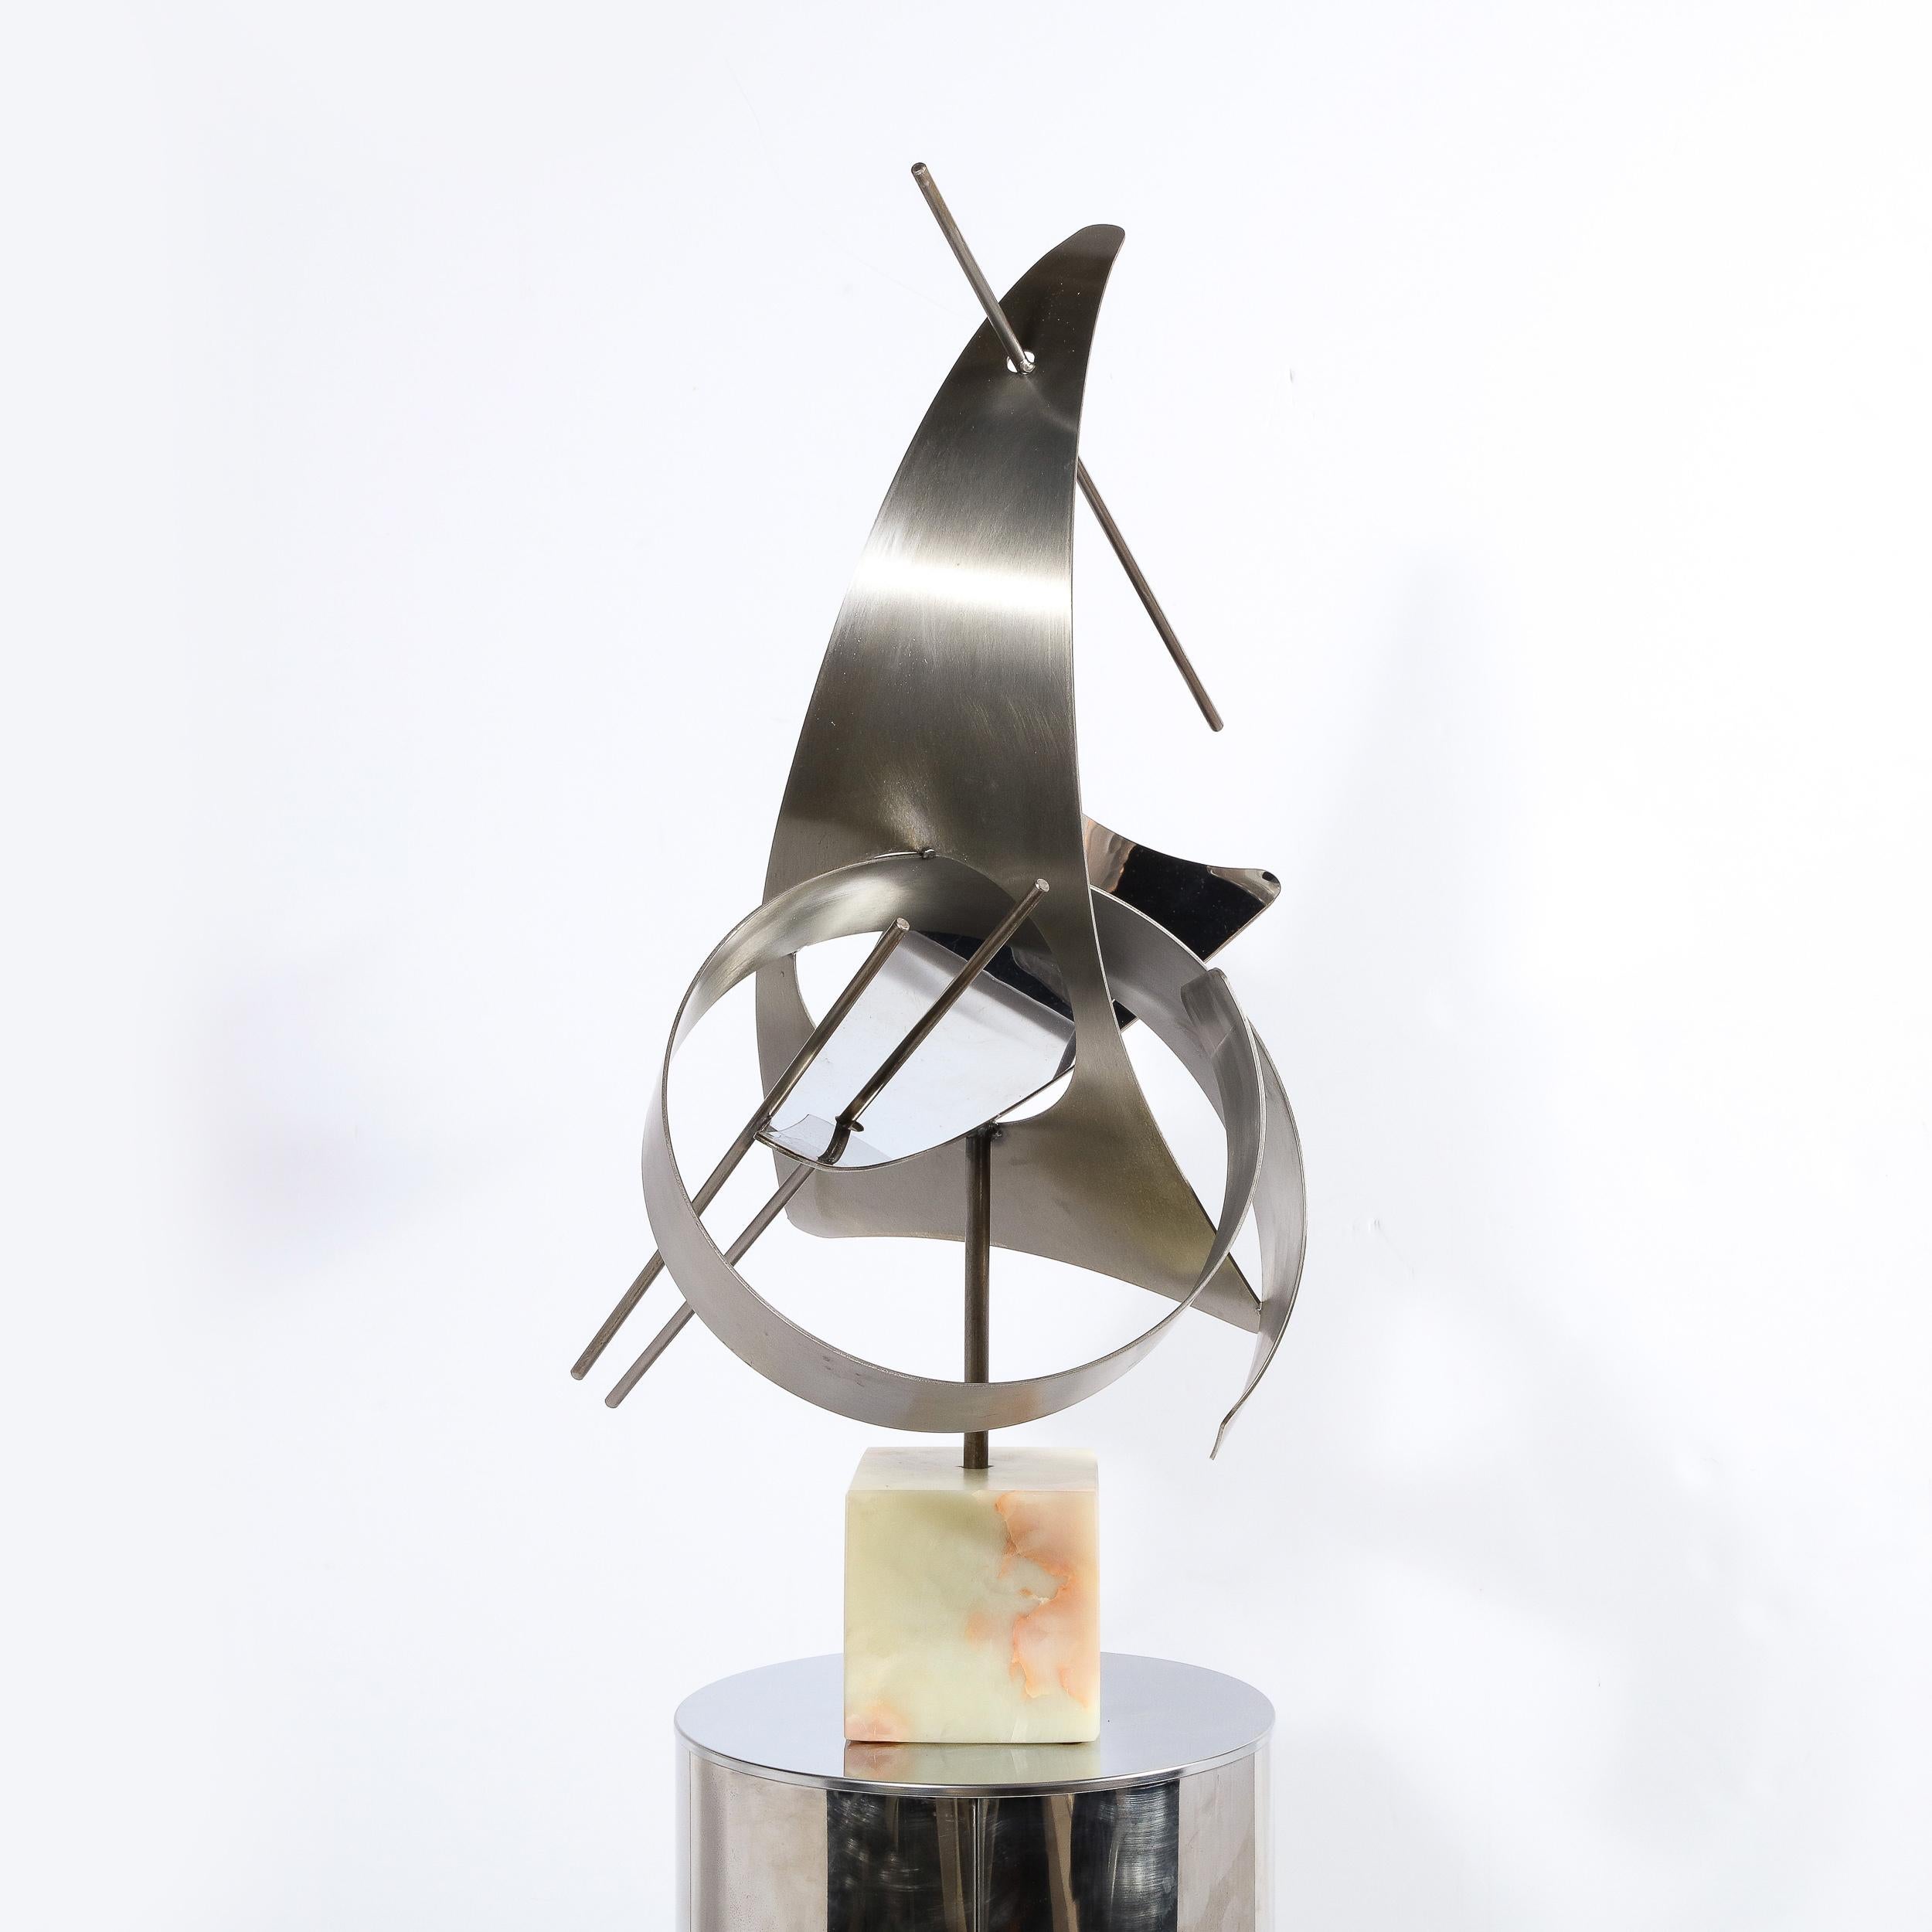 Fin du 20e siècle Sculpture curviligne moderniste en aluminium brossé avec base en onyx signée Curtis J en vente